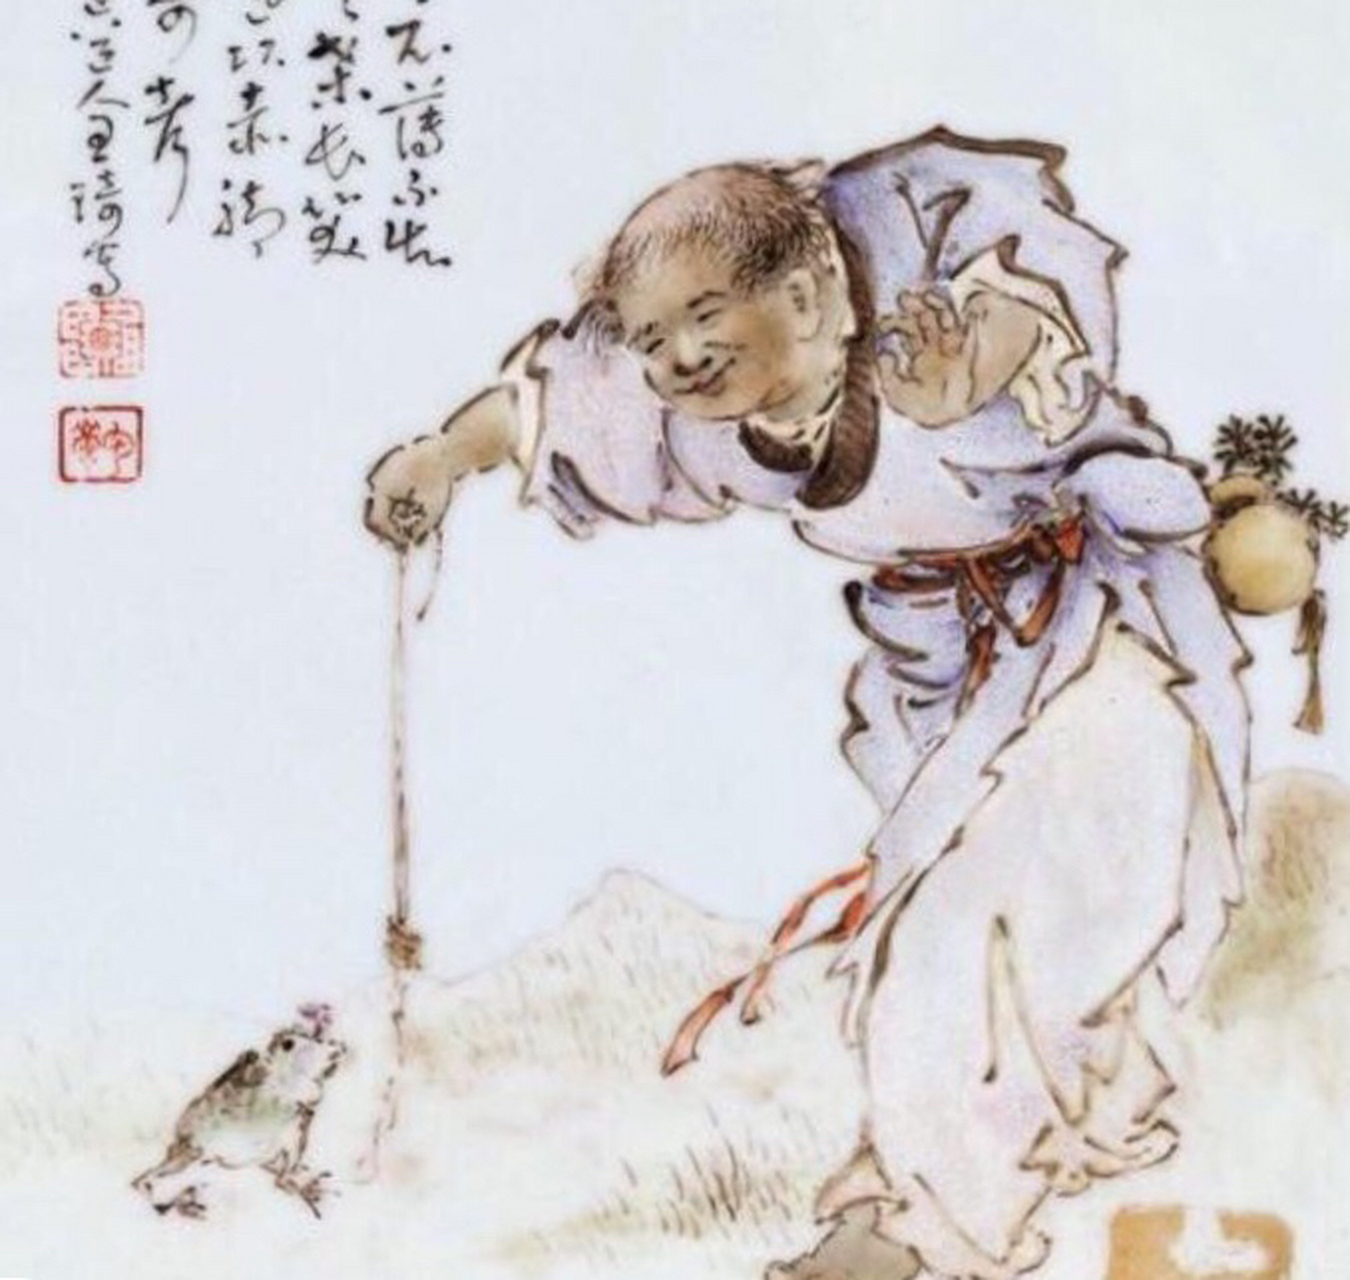 刘海戏金蟾,步步钓金钱,黄蜡石神话传说精品画面奇石